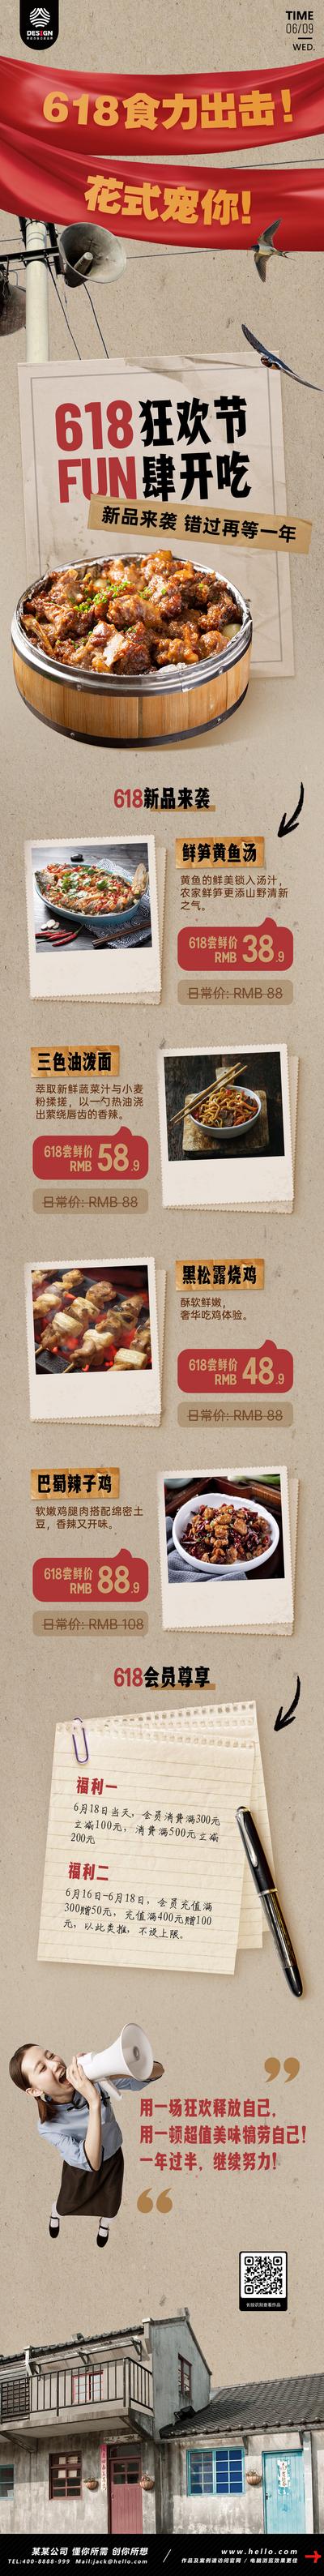 南门网 专题设计 长图 餐饮 美食 618 菜单 产品